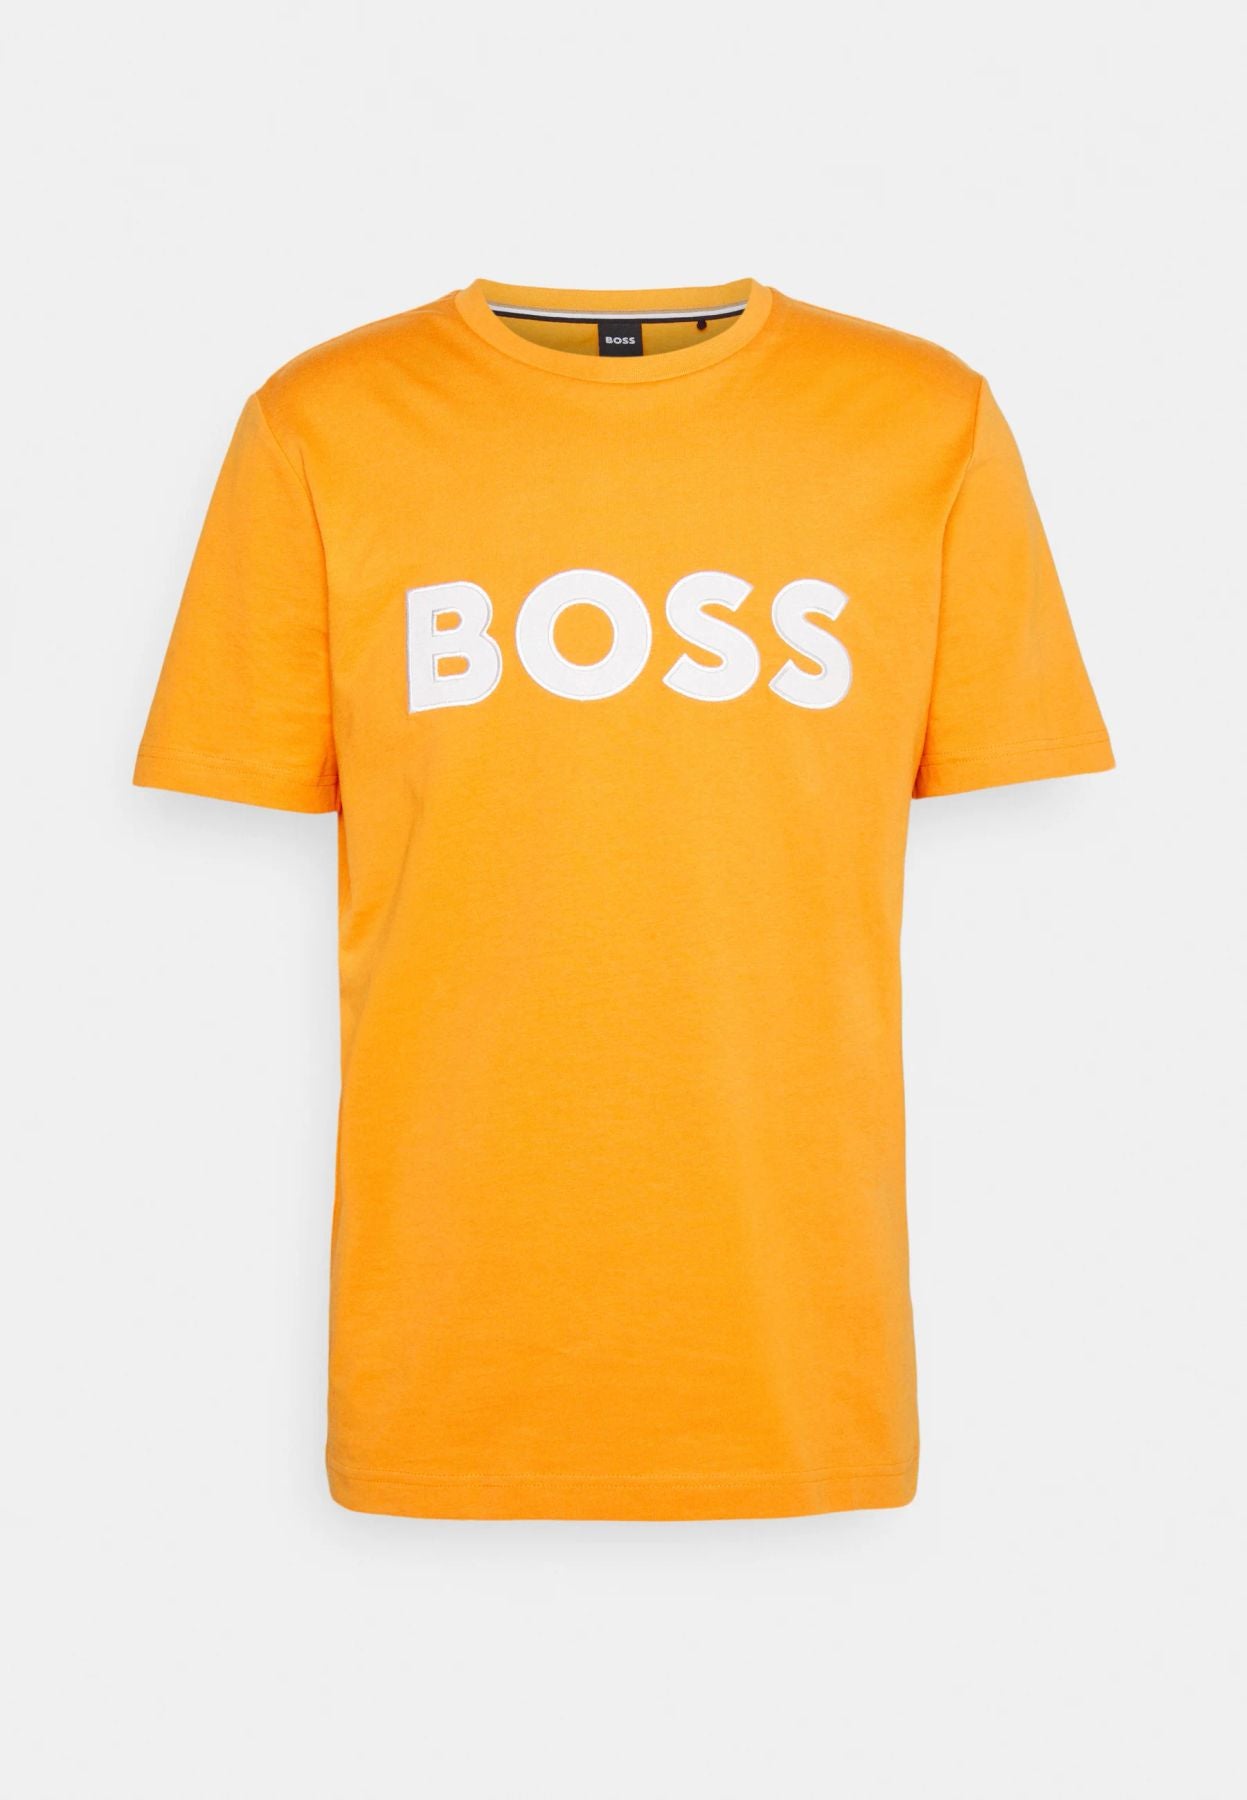 BOSS T-Shirt Tiburt 345 10236129 01